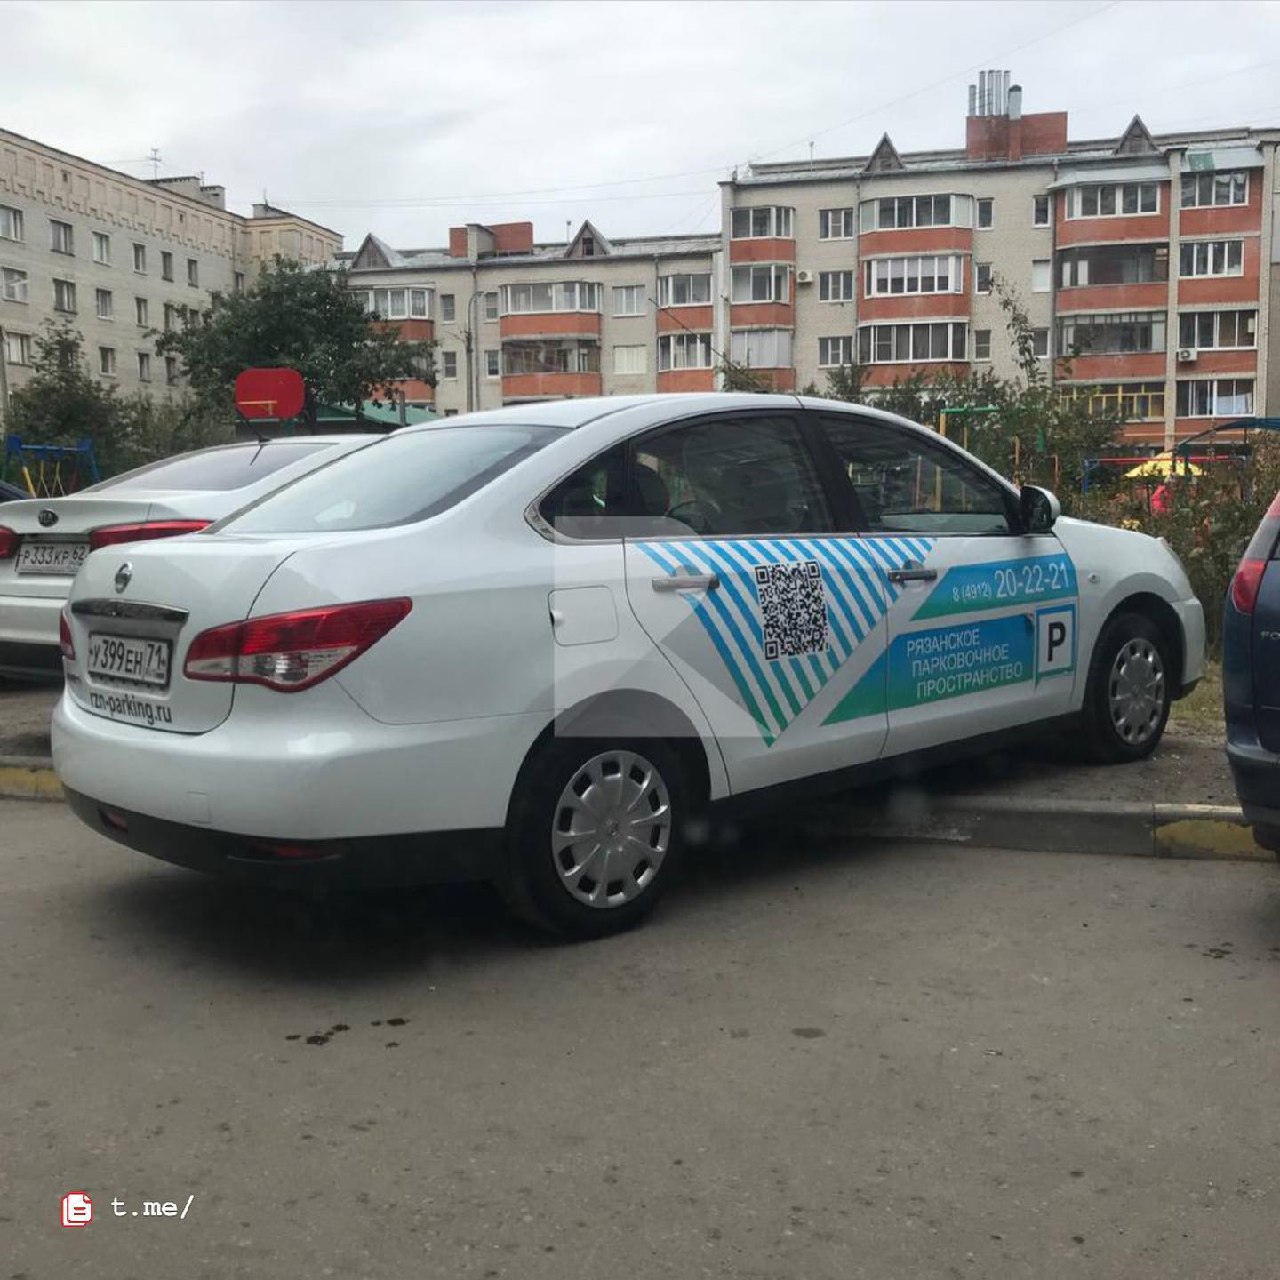 В центре Рязани автомобиль с логотипом Рязанского парковочного пространства припарковался с заездом на газон